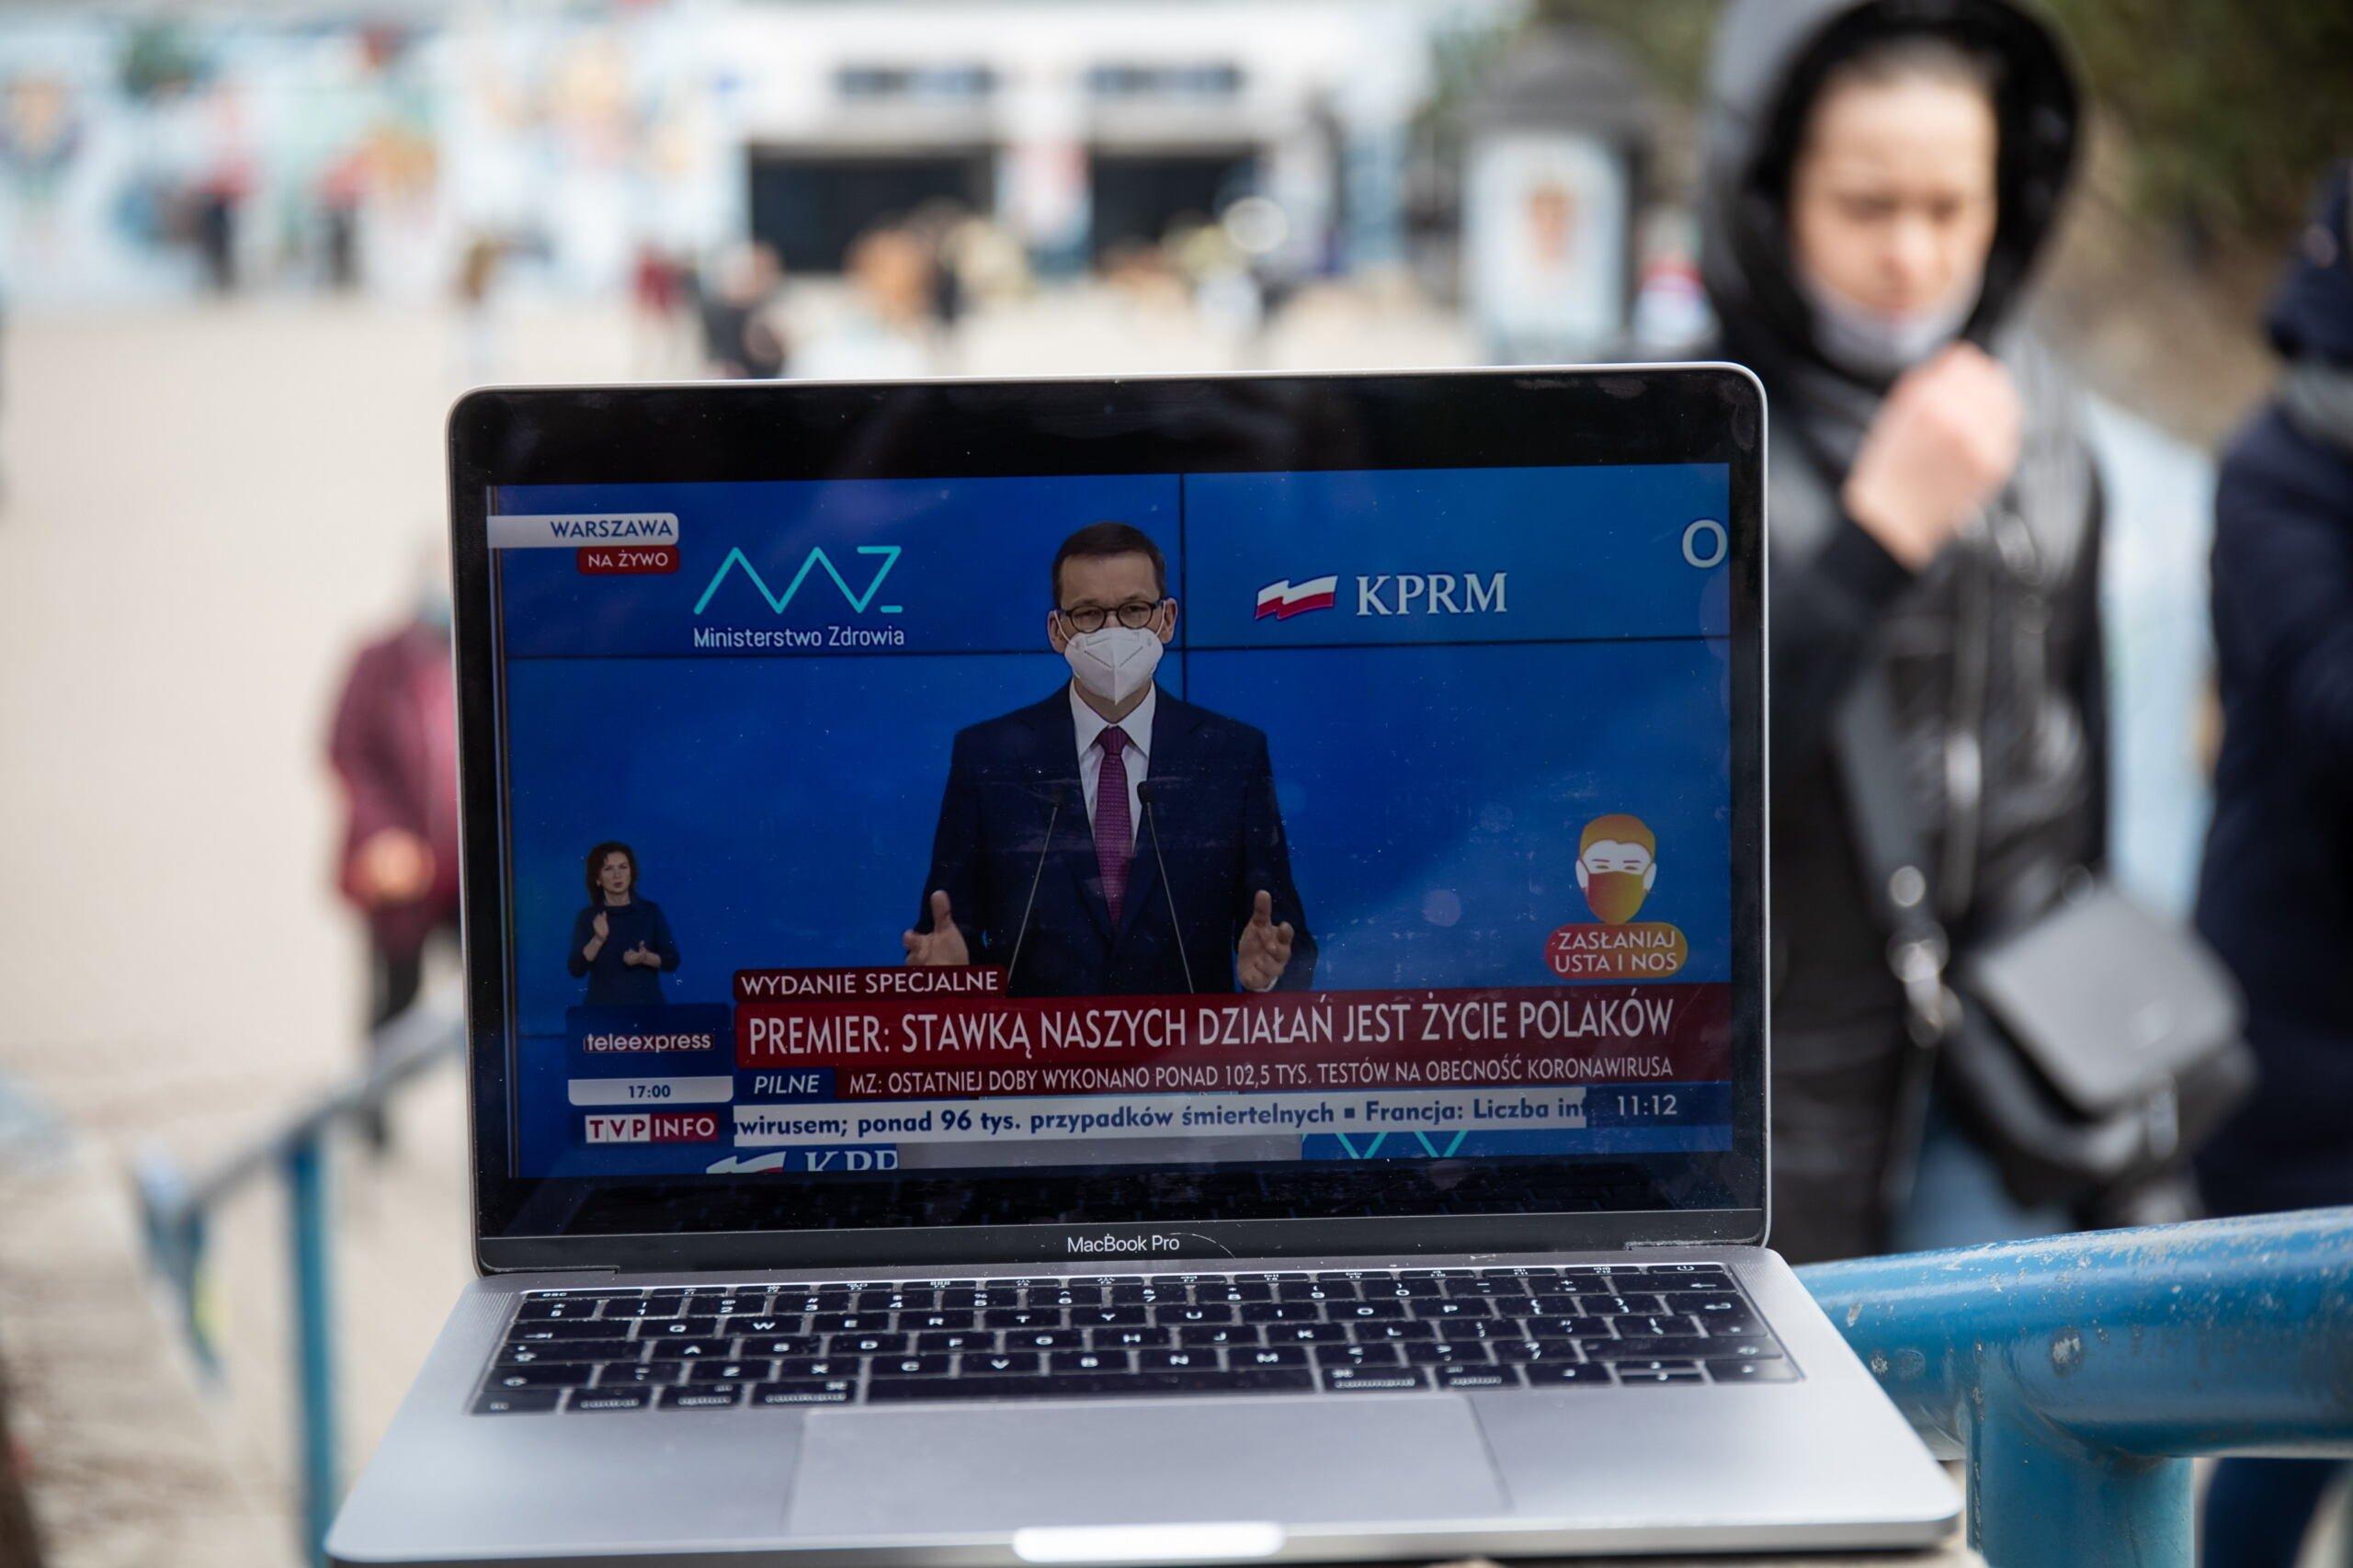 Zdjęcie ekranu laptopa wyświetlającego wystąpienie premiera Morawieckiego w TVP INFO